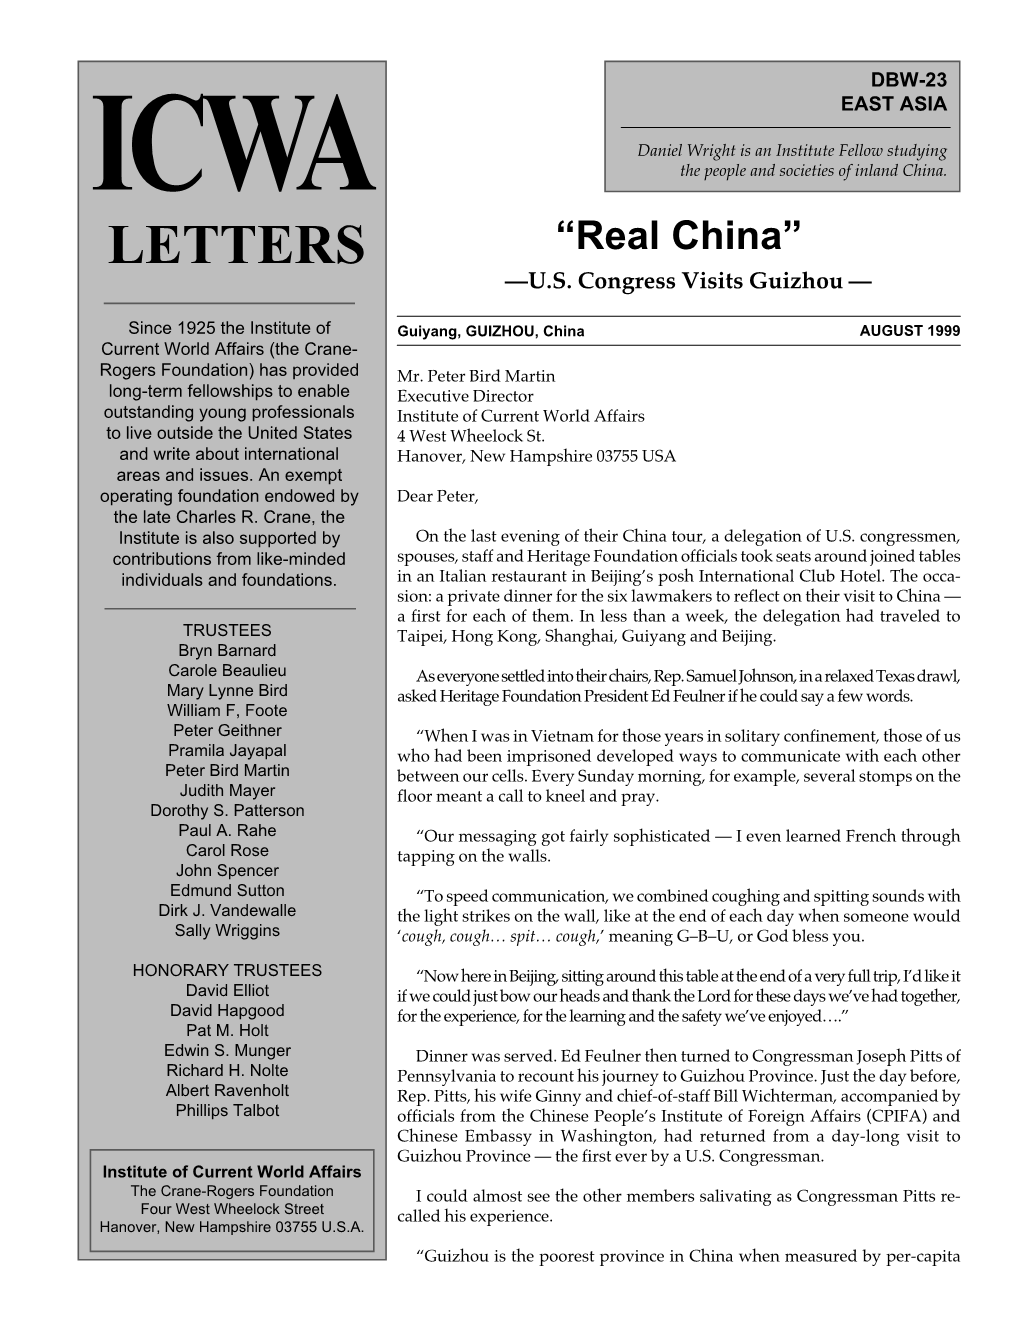 Real China” —U.S